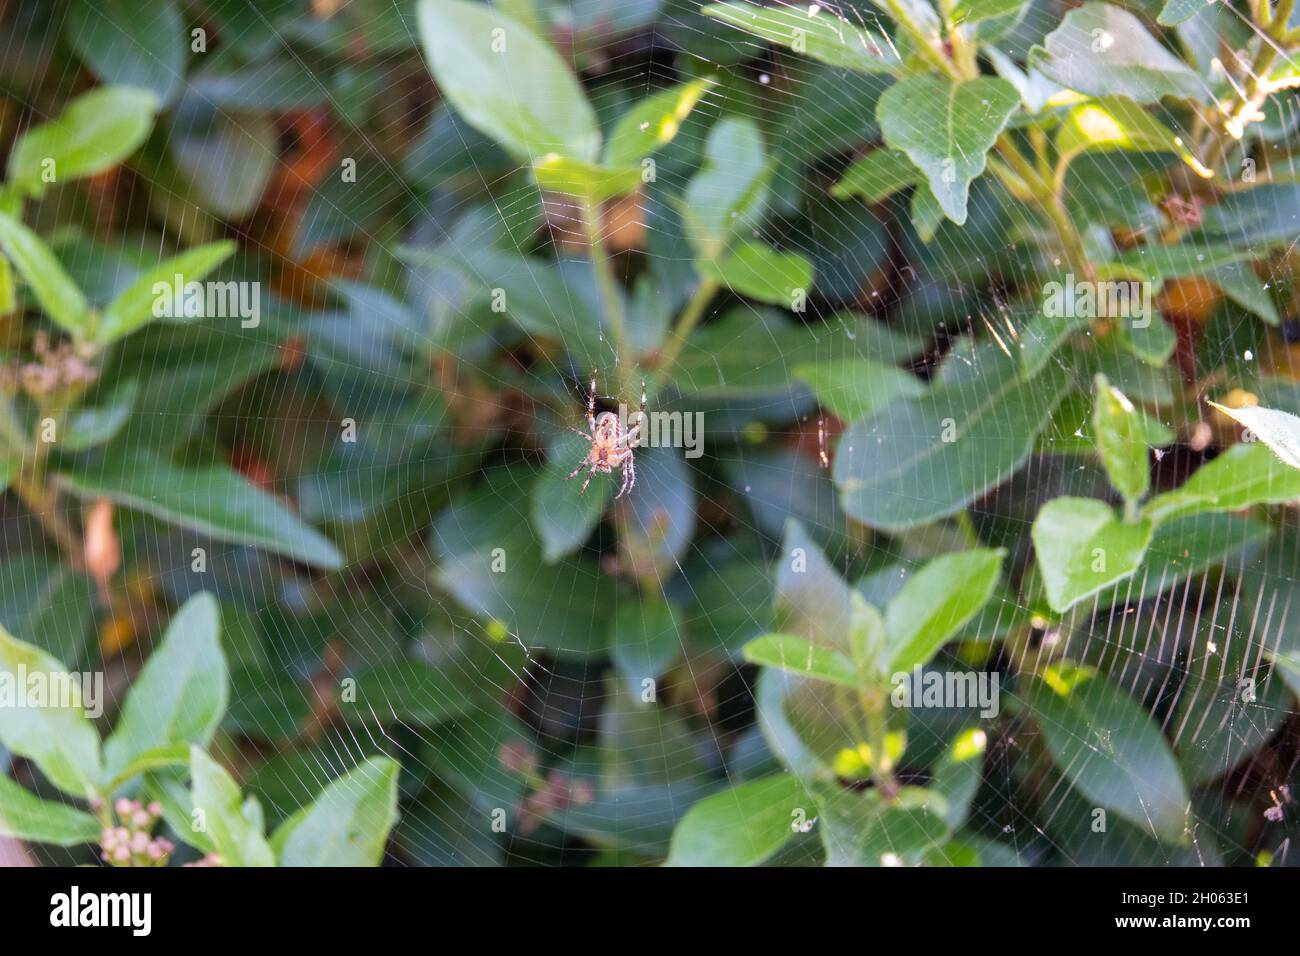 araña en una tela con follaje verde en el fondo Foto de stock